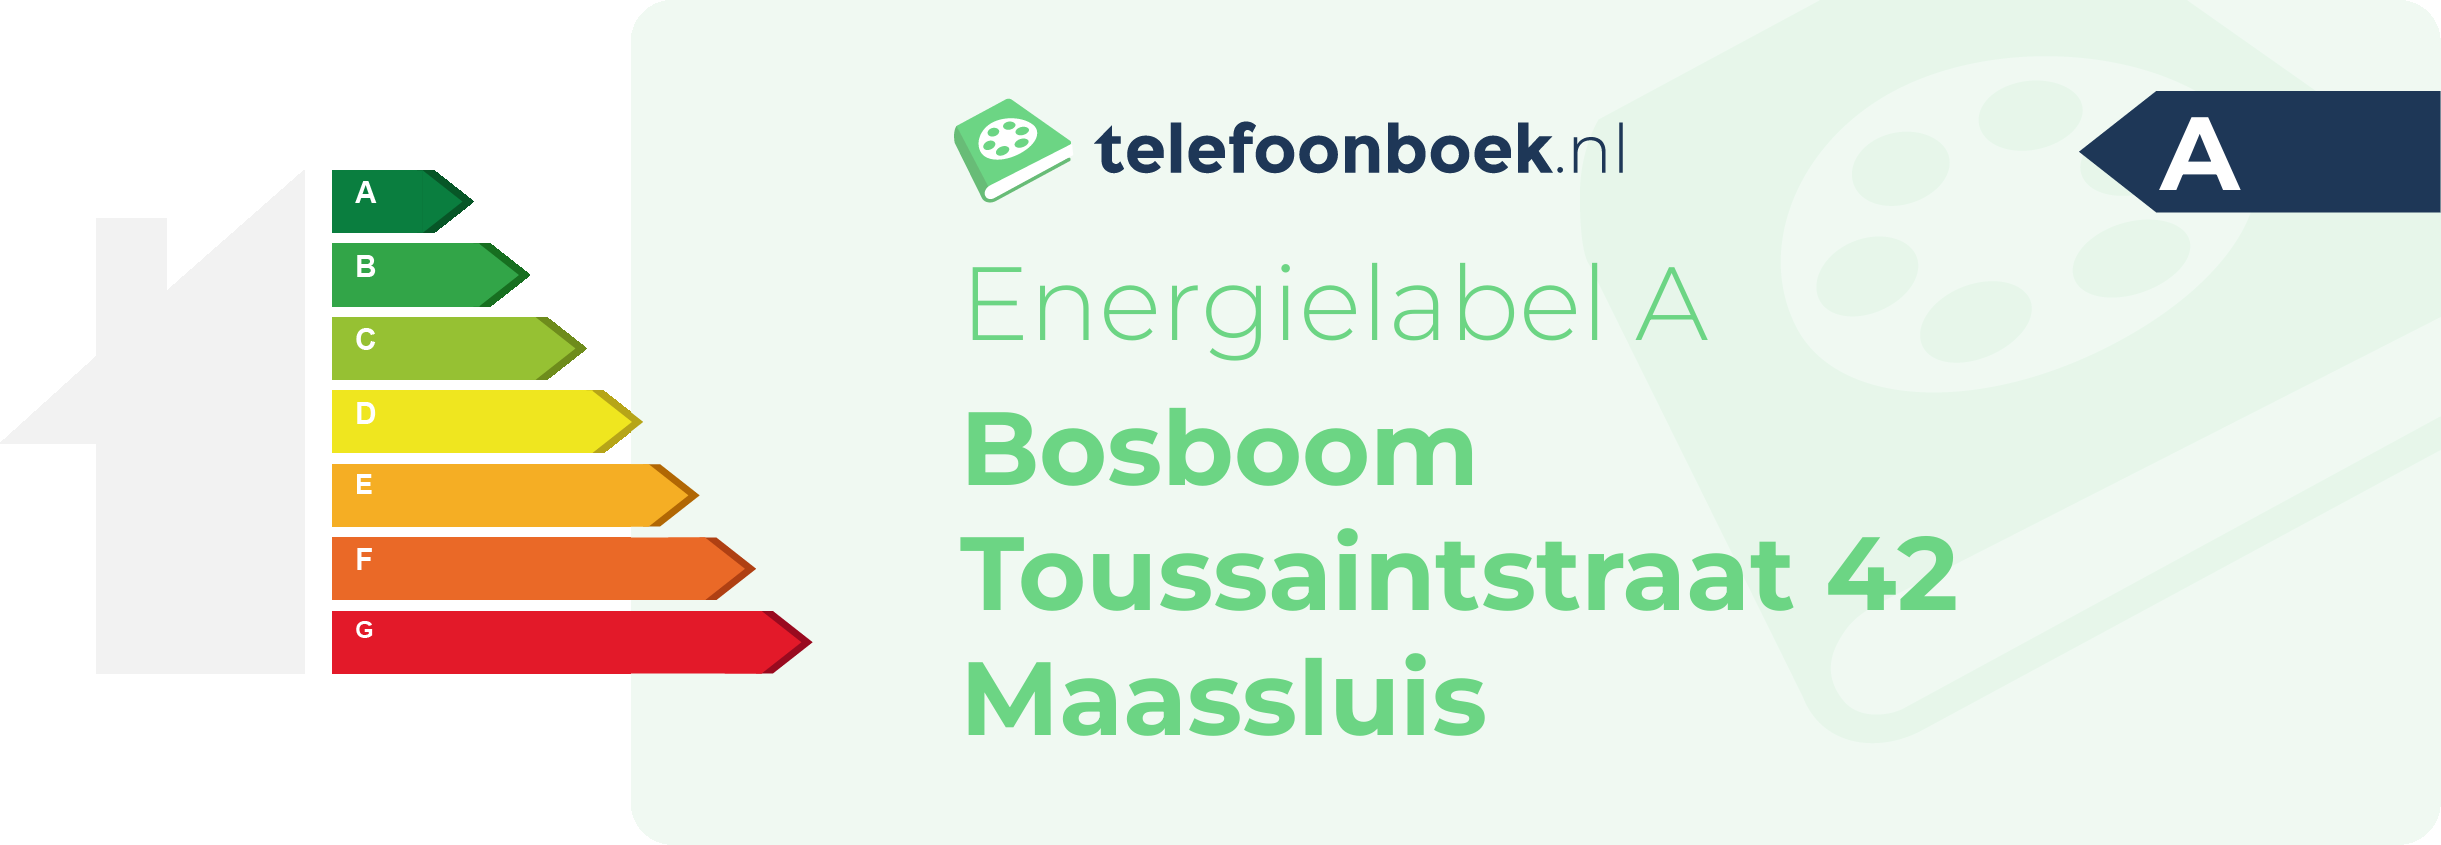 Energielabel Bosboom Toussaintstraat 42 Maassluis